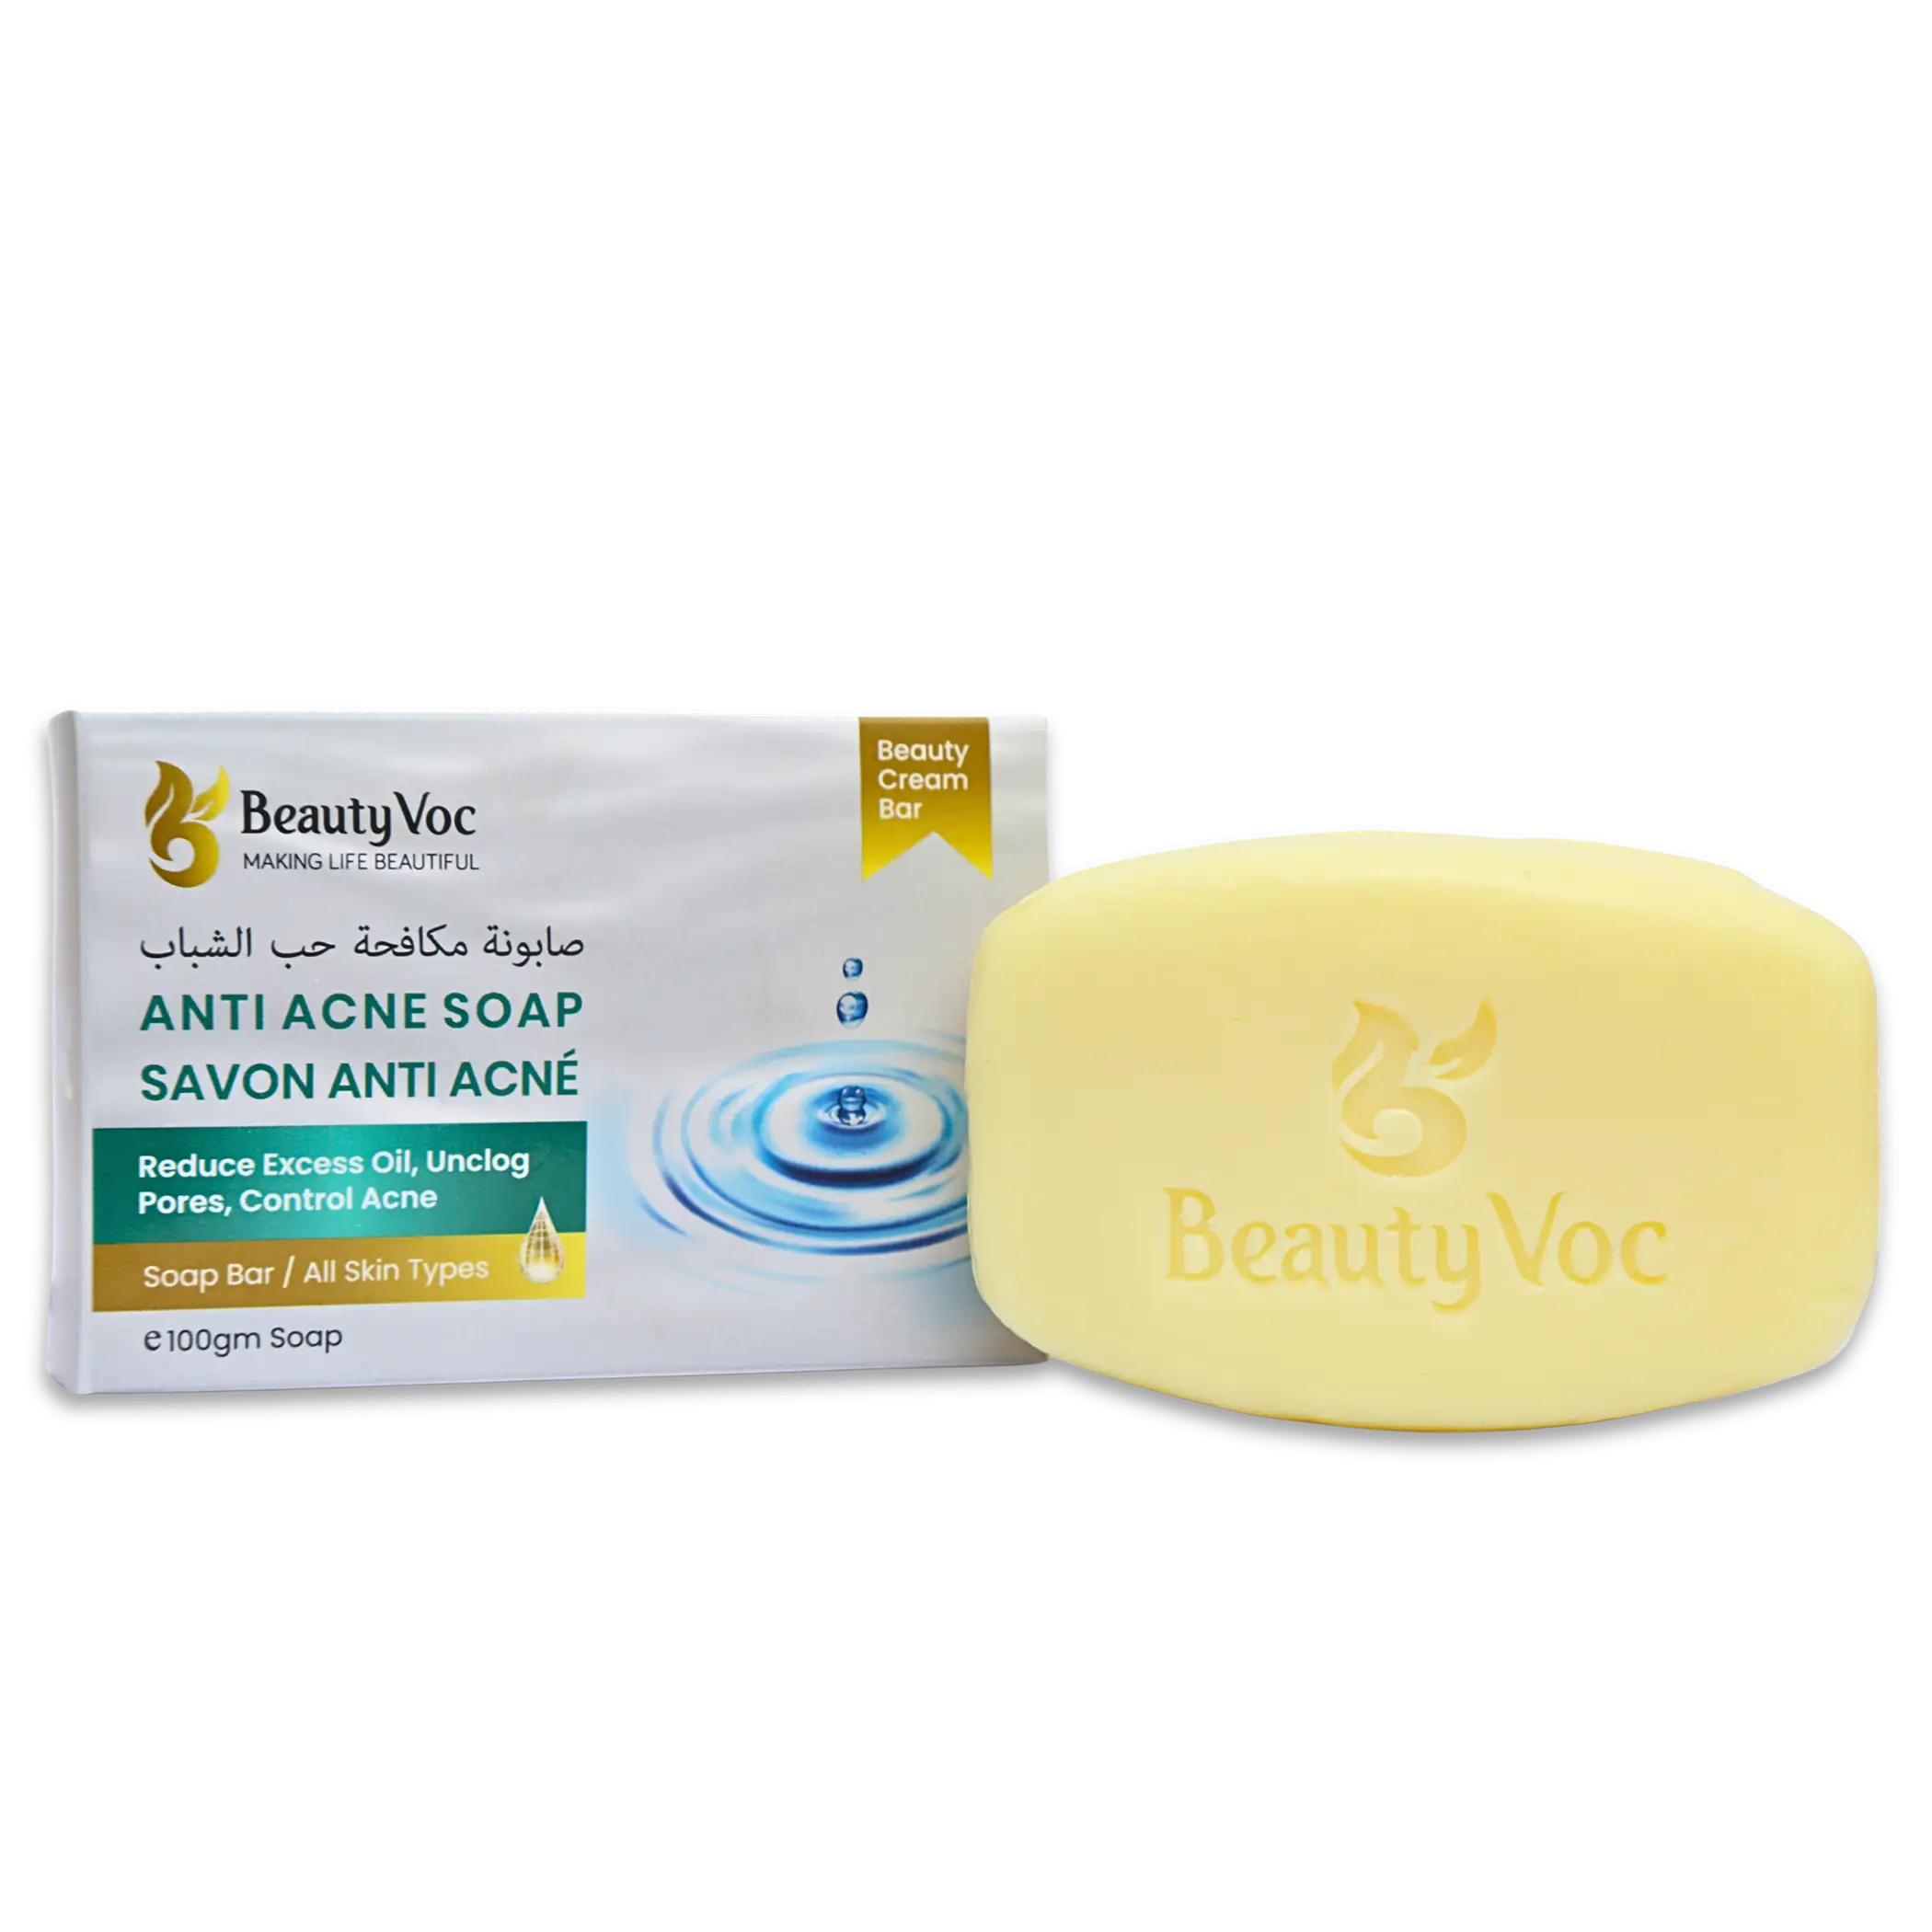 Anti-Acne Soap